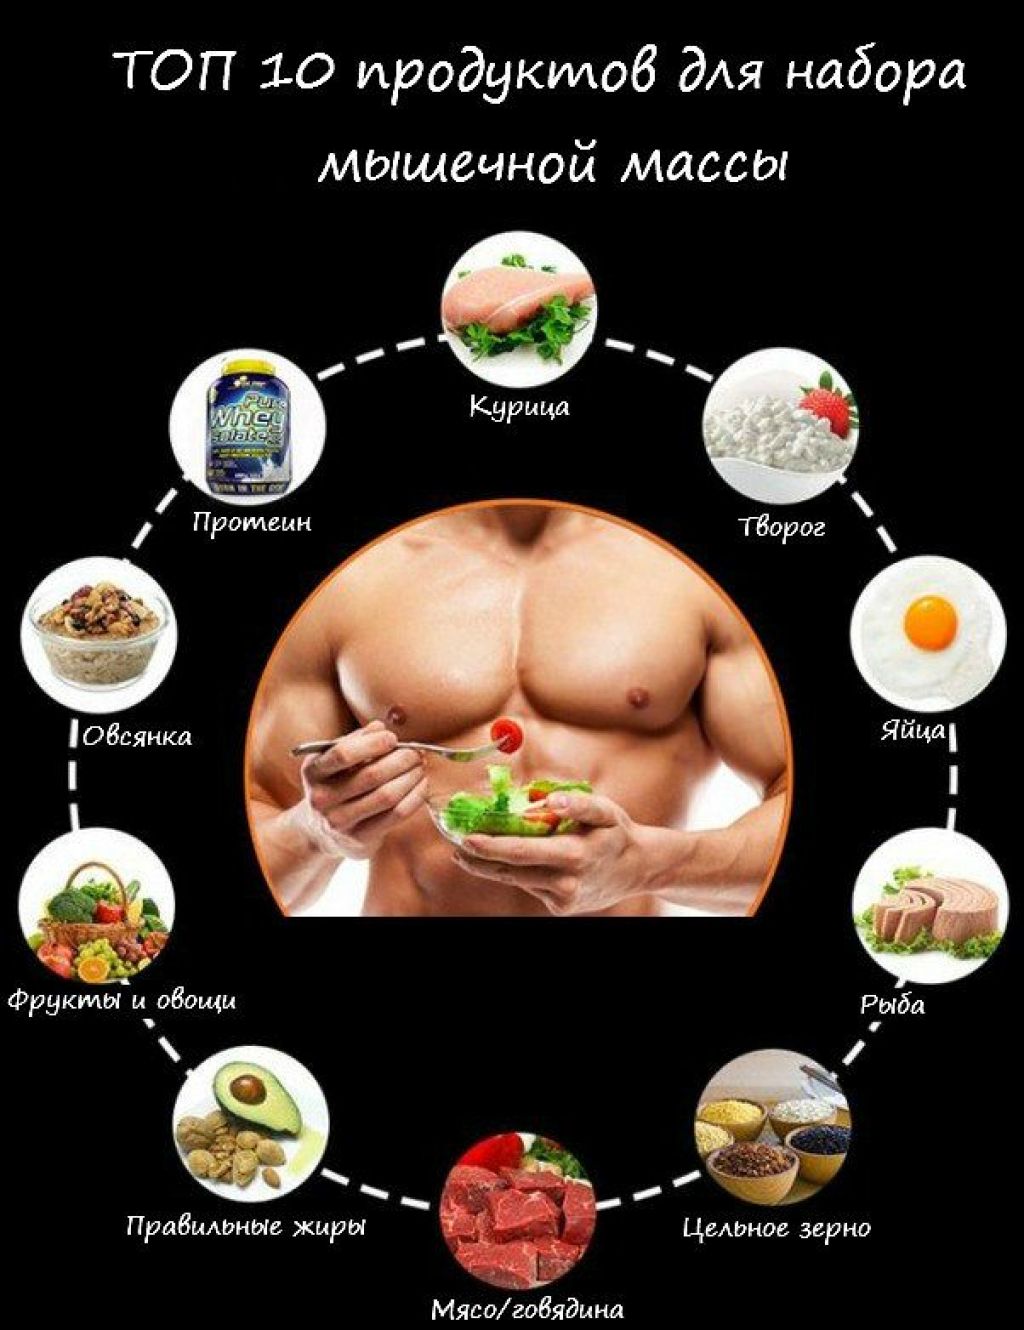 Список белковых продуктов для набора мышечной массы